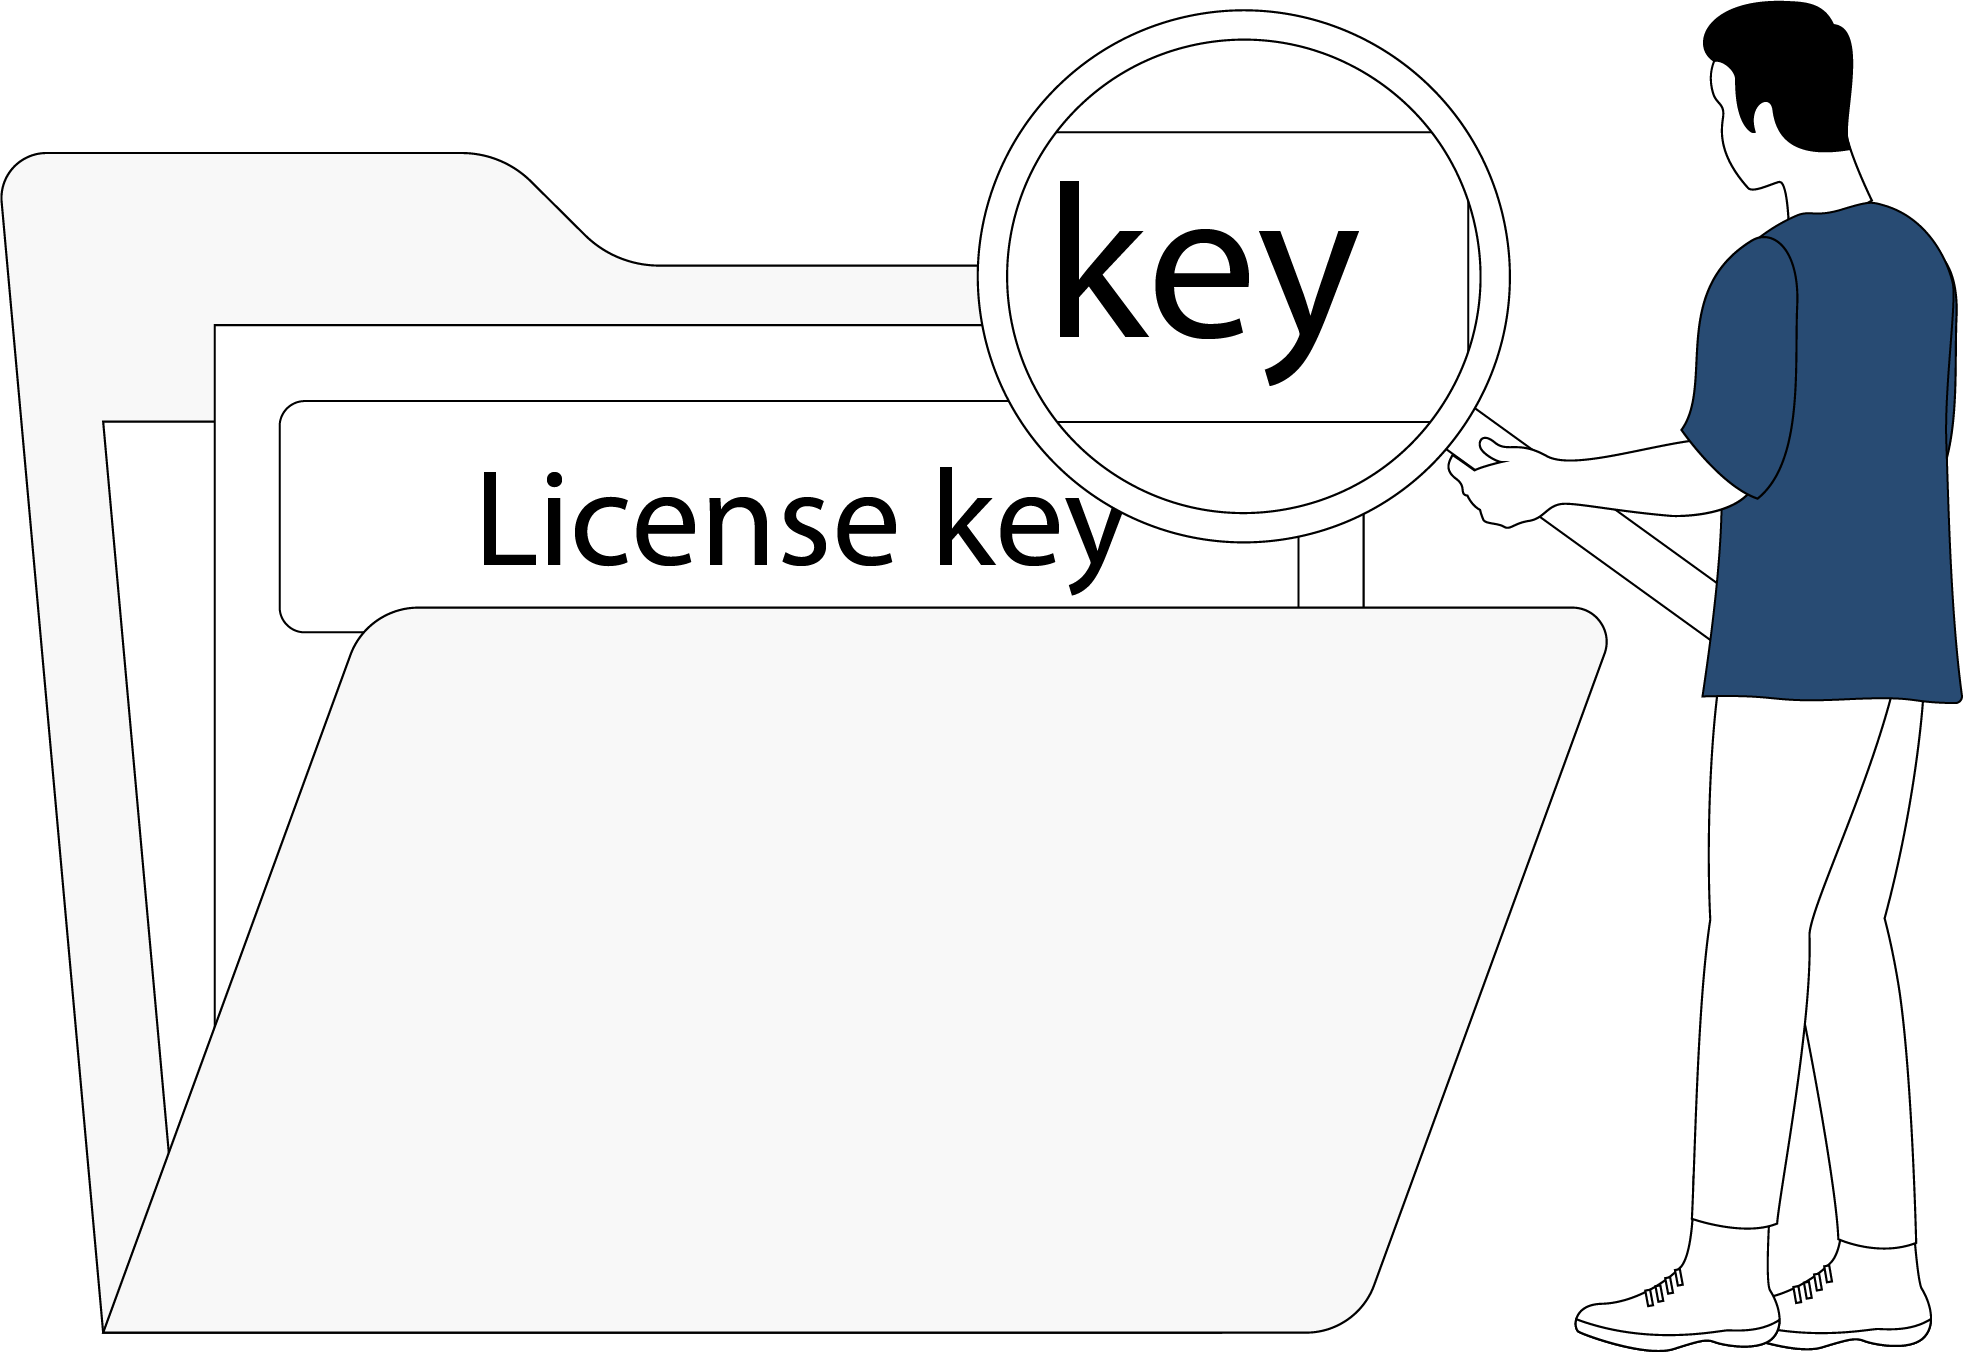 License key